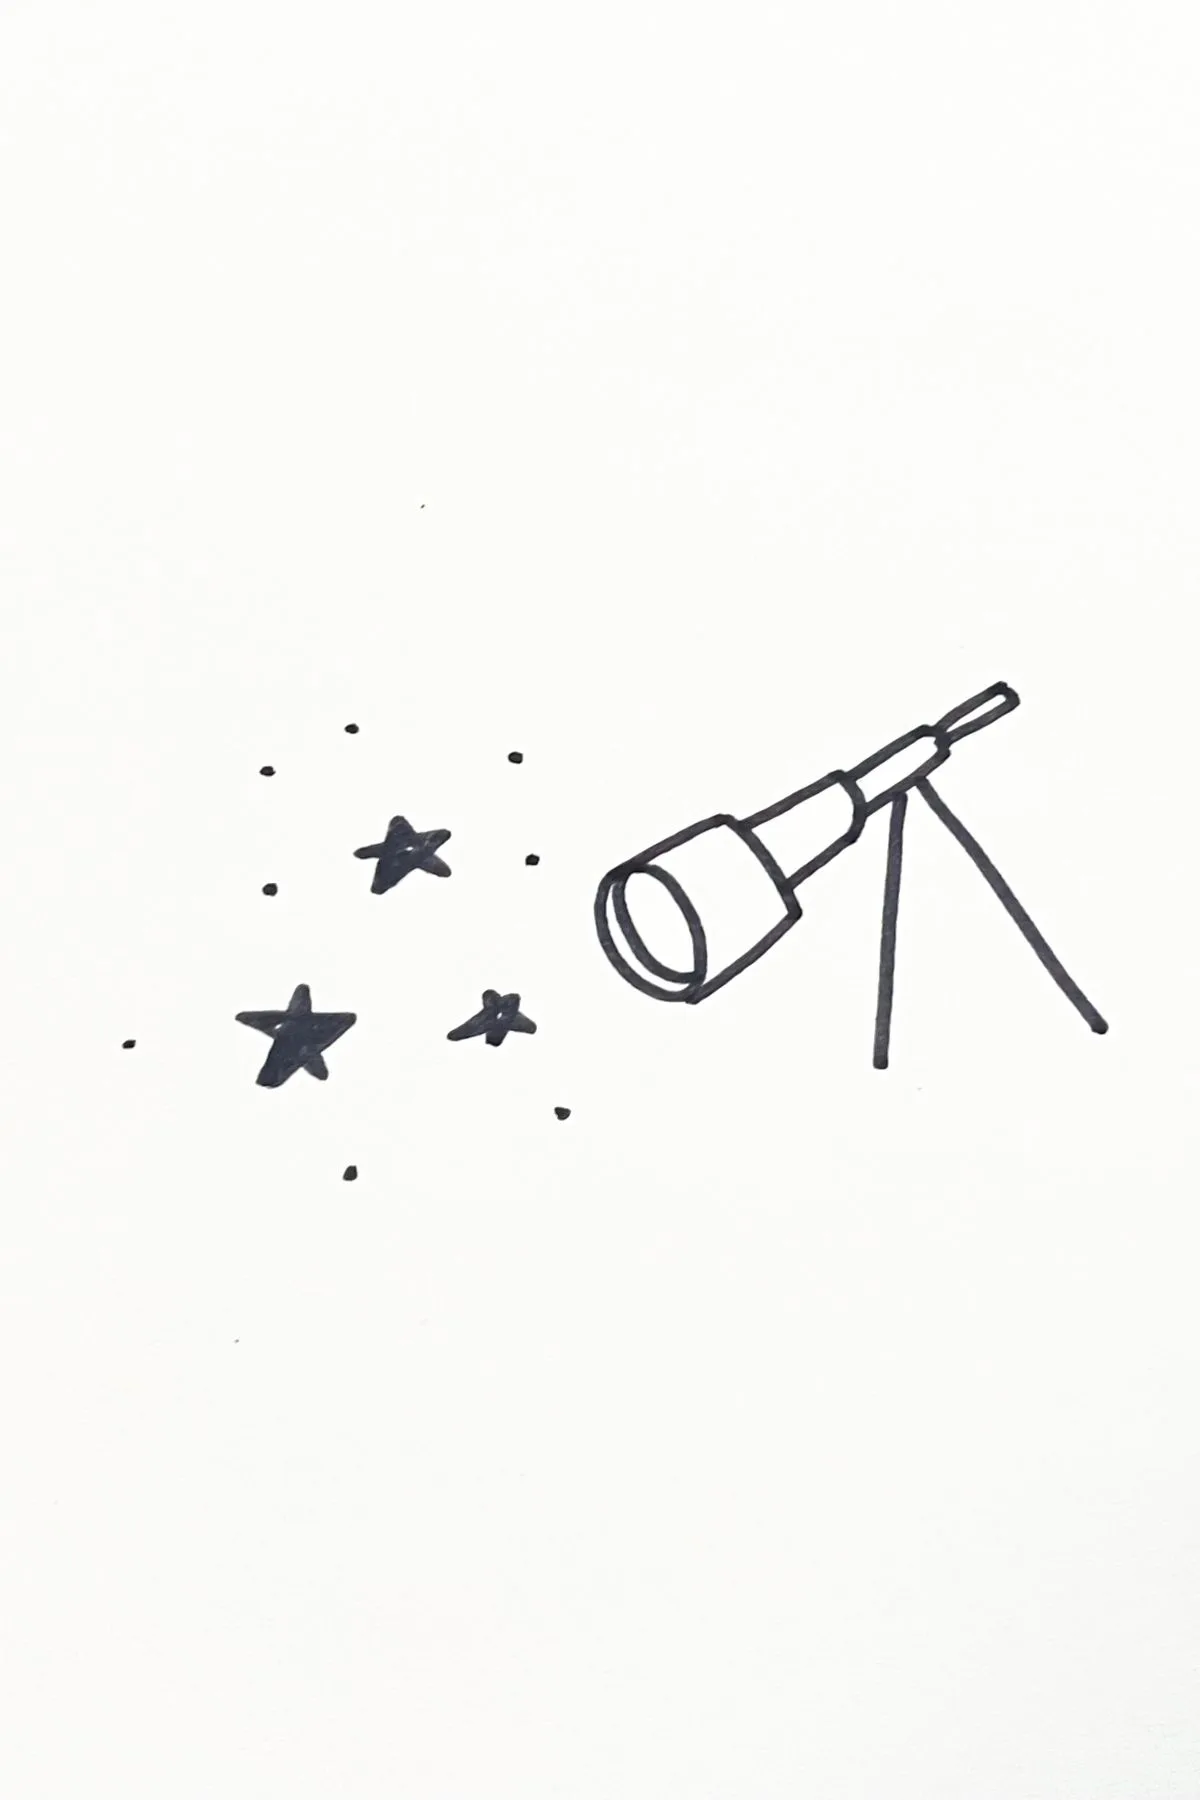 telescope drawing idea